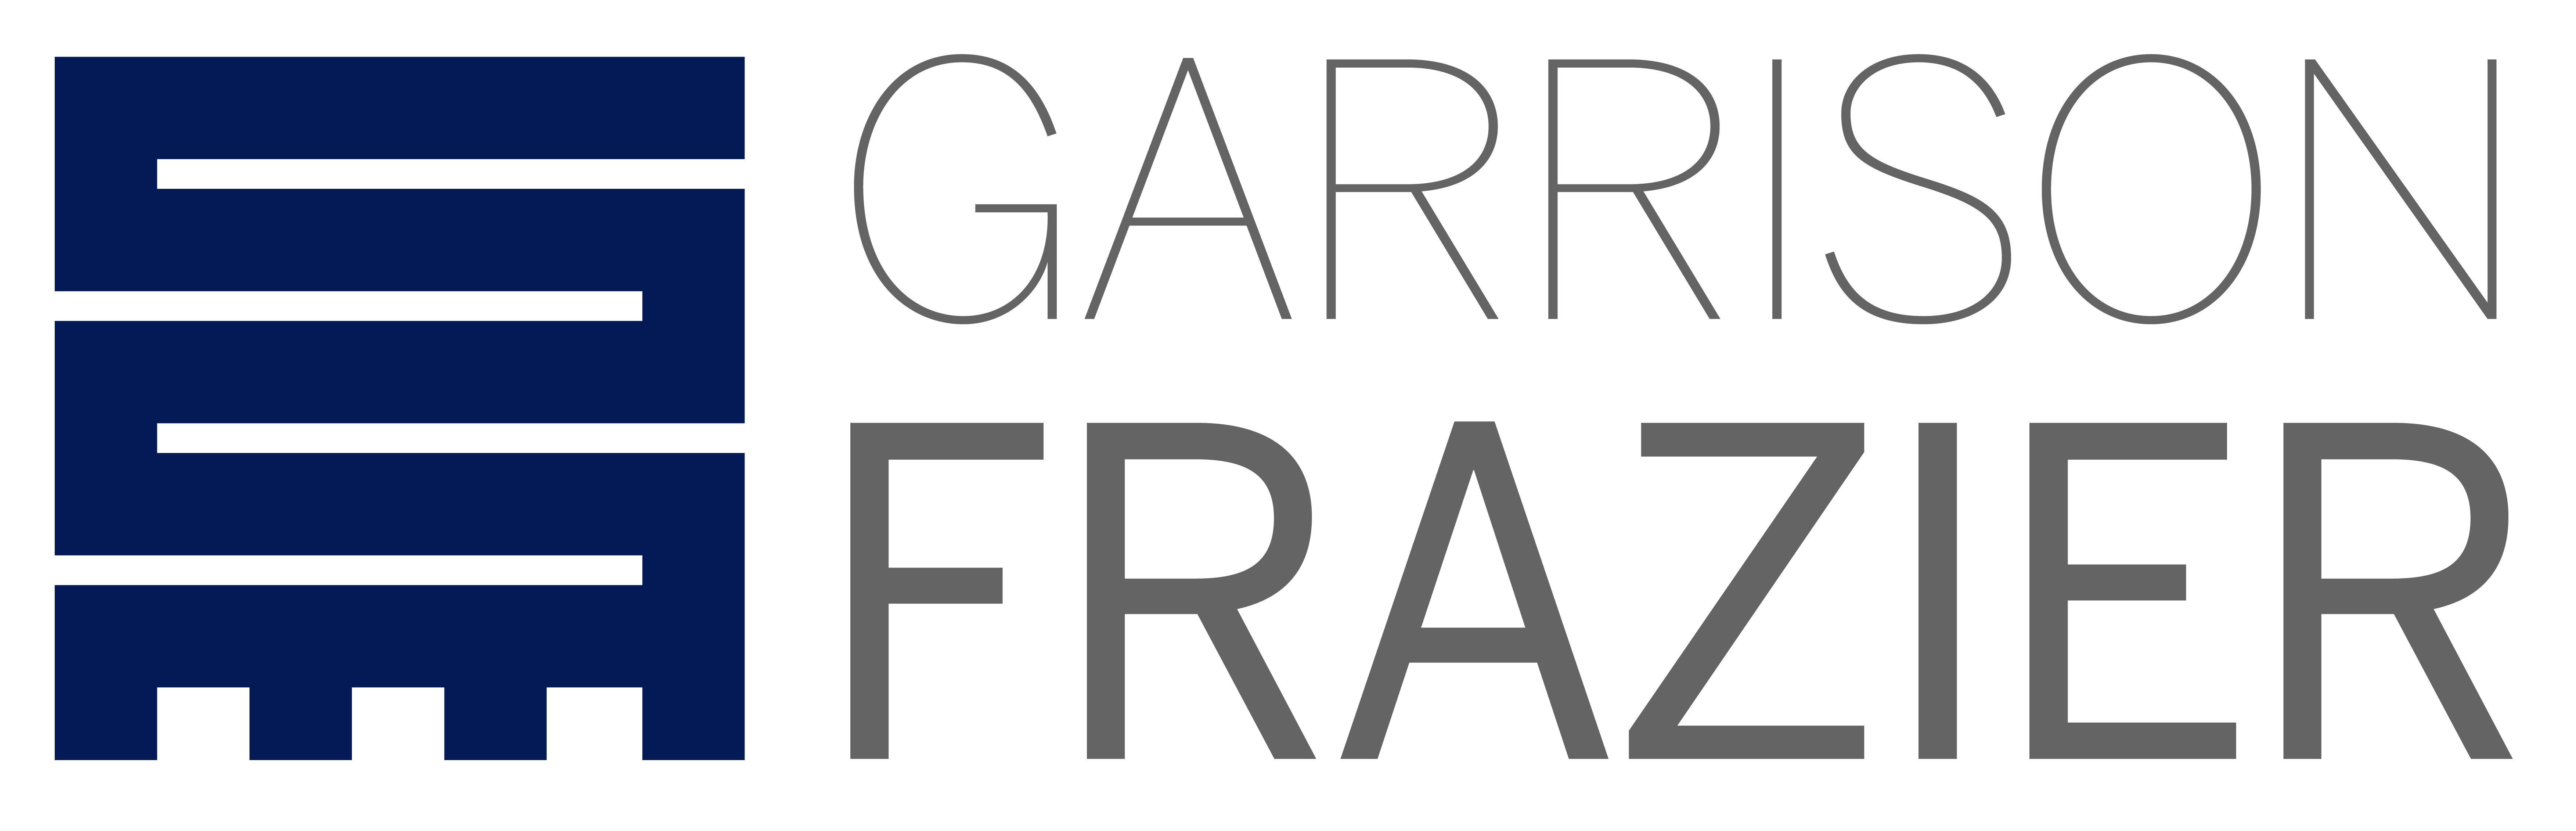 Garrison Frazier Logo